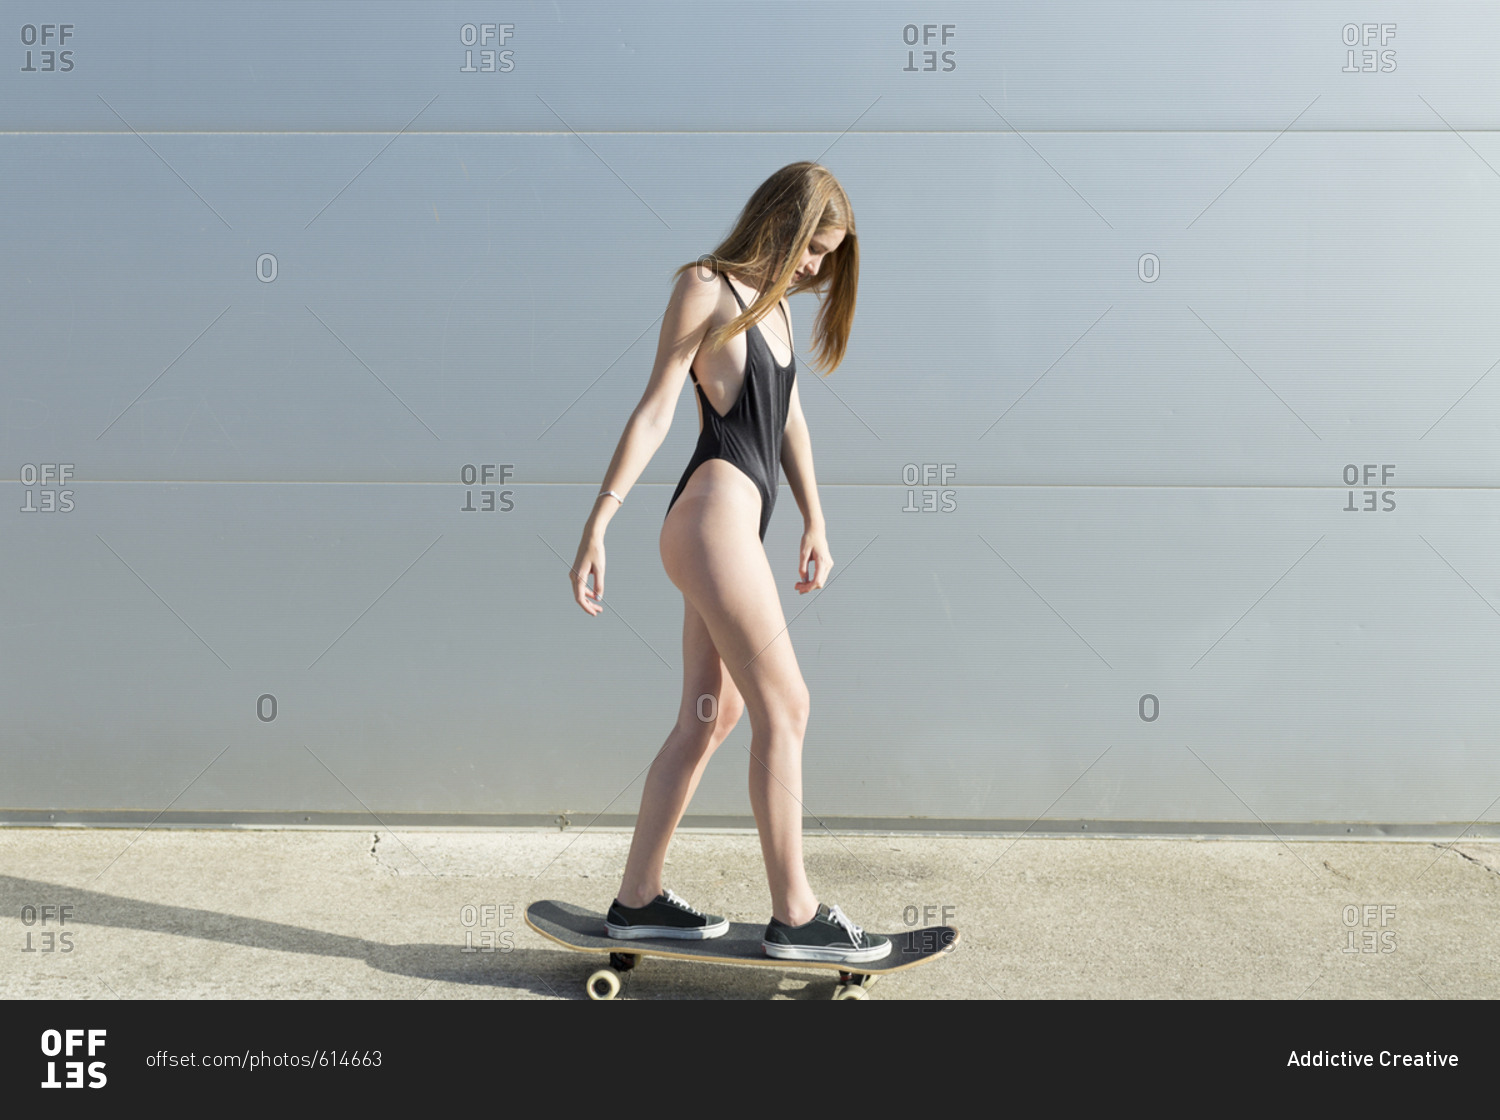 Girl in swimsuit on skateboard at street